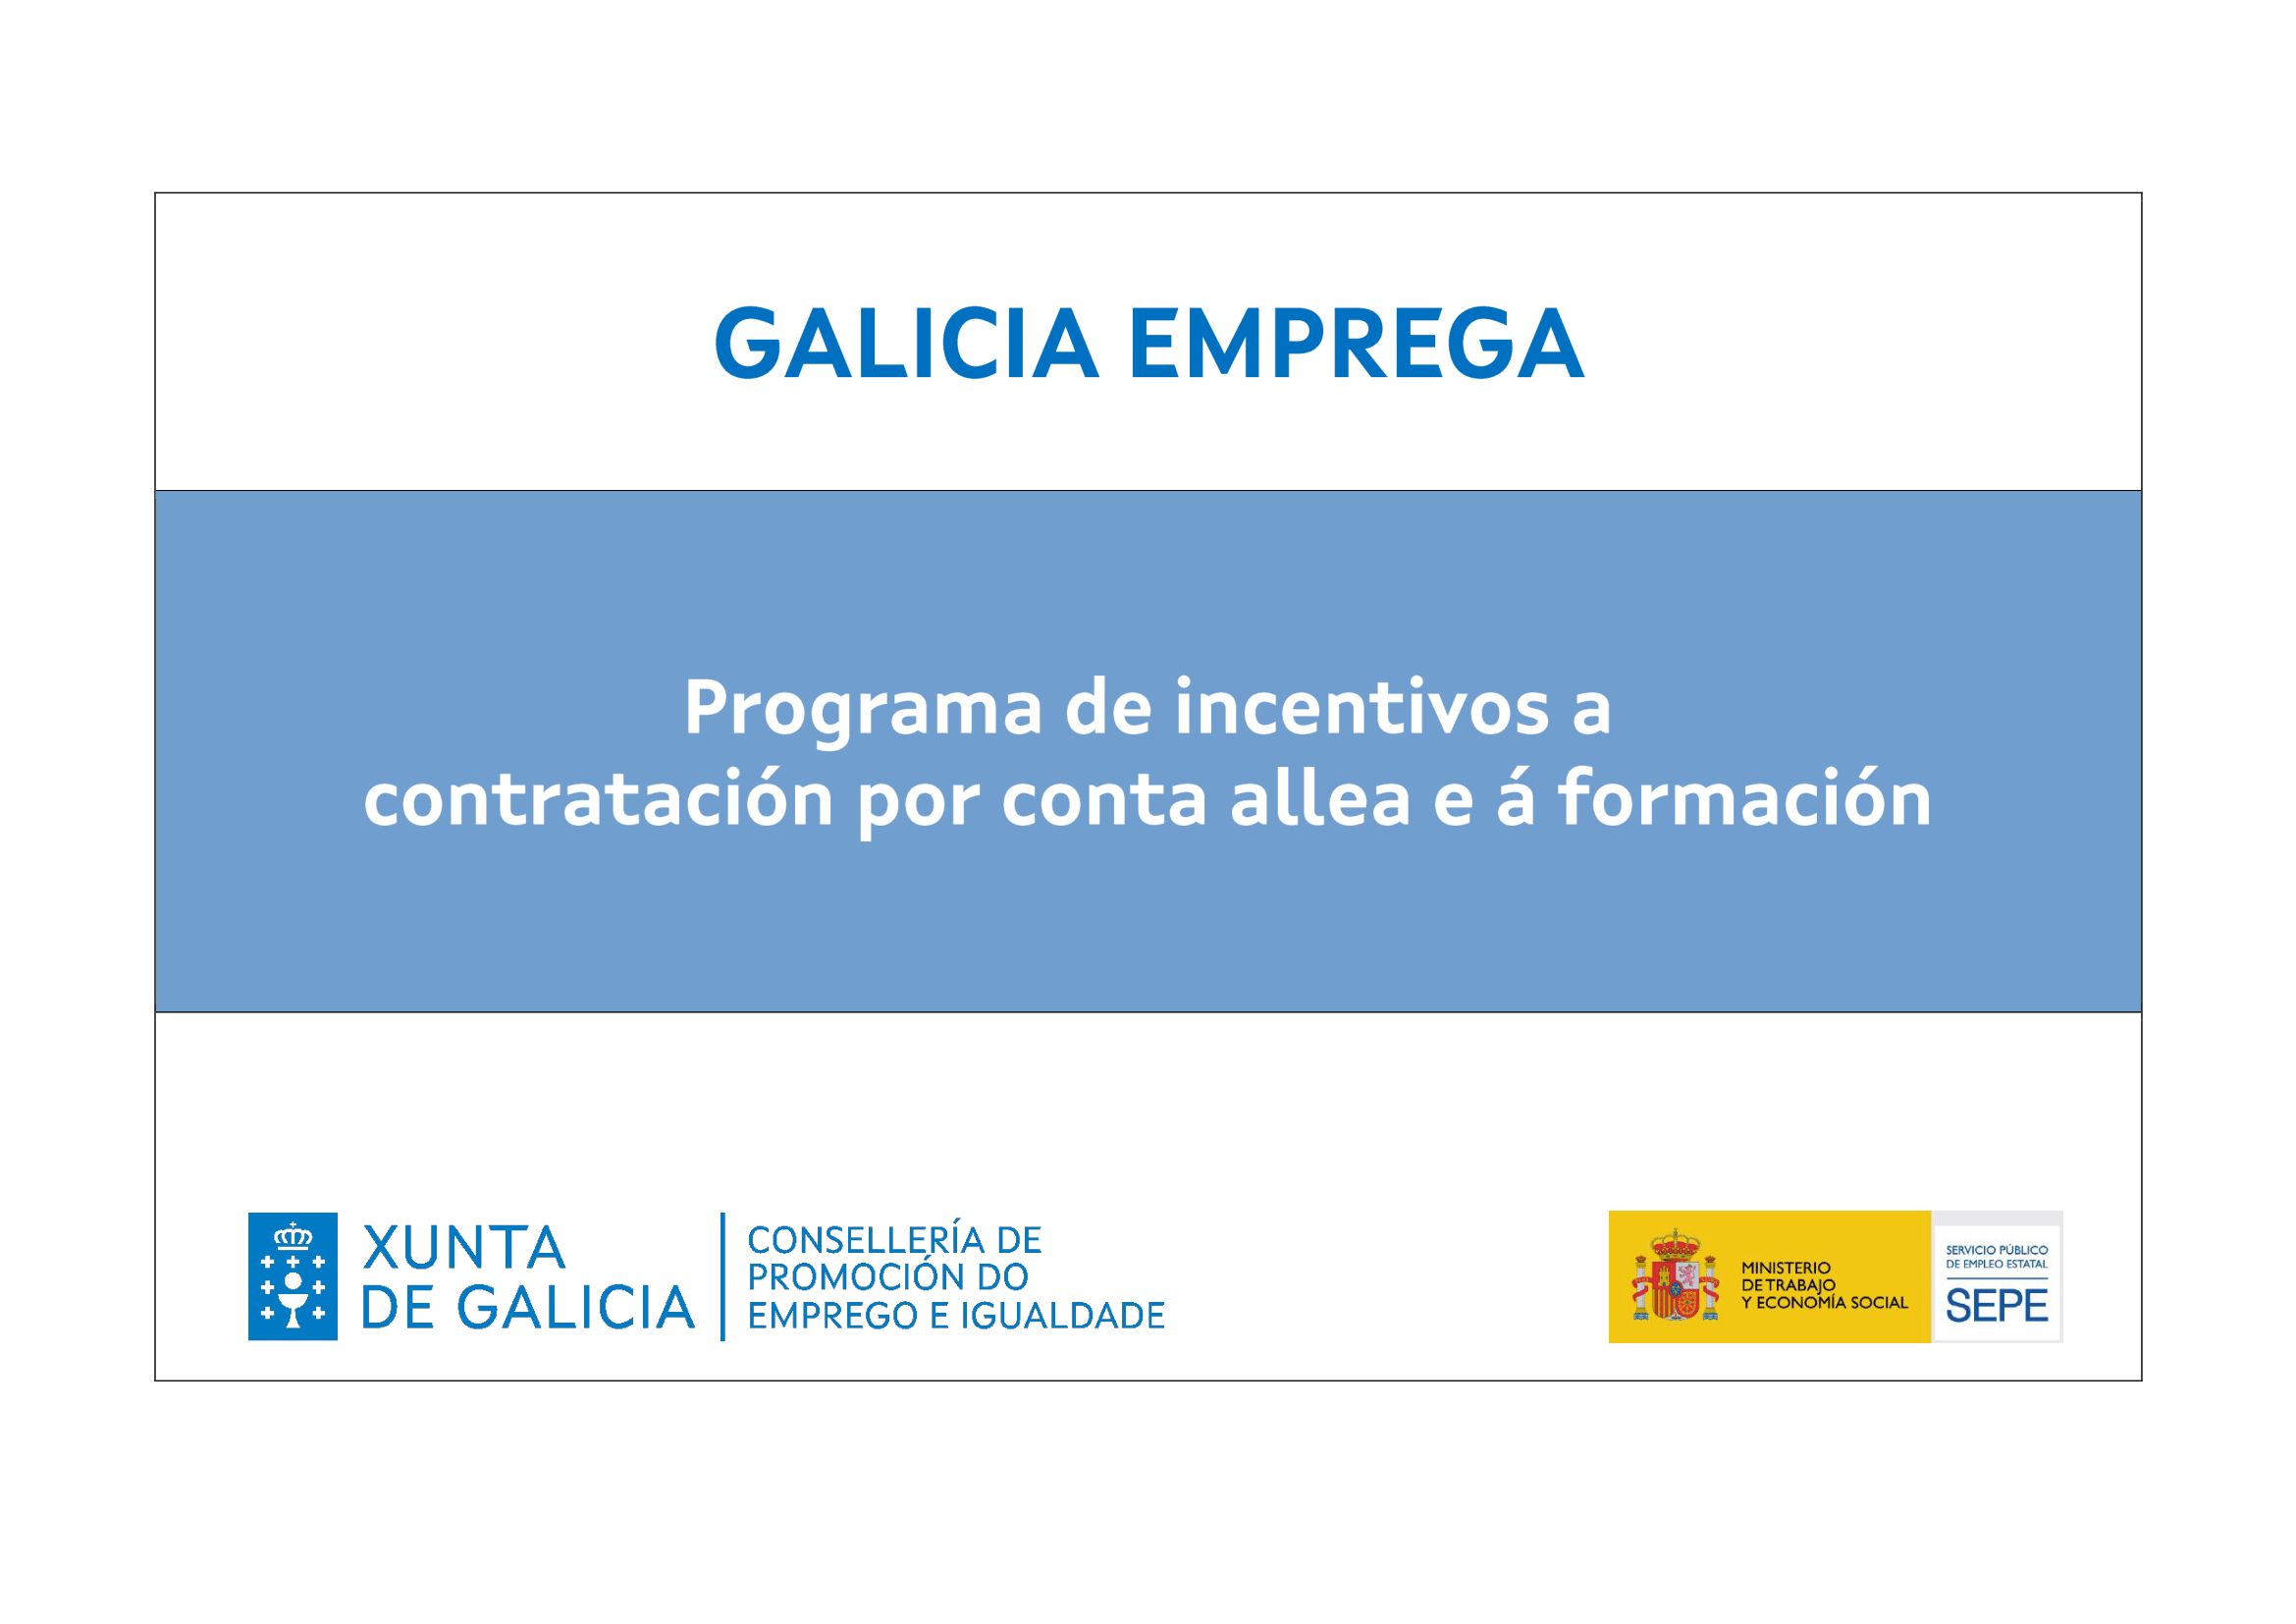 Galicia emprega